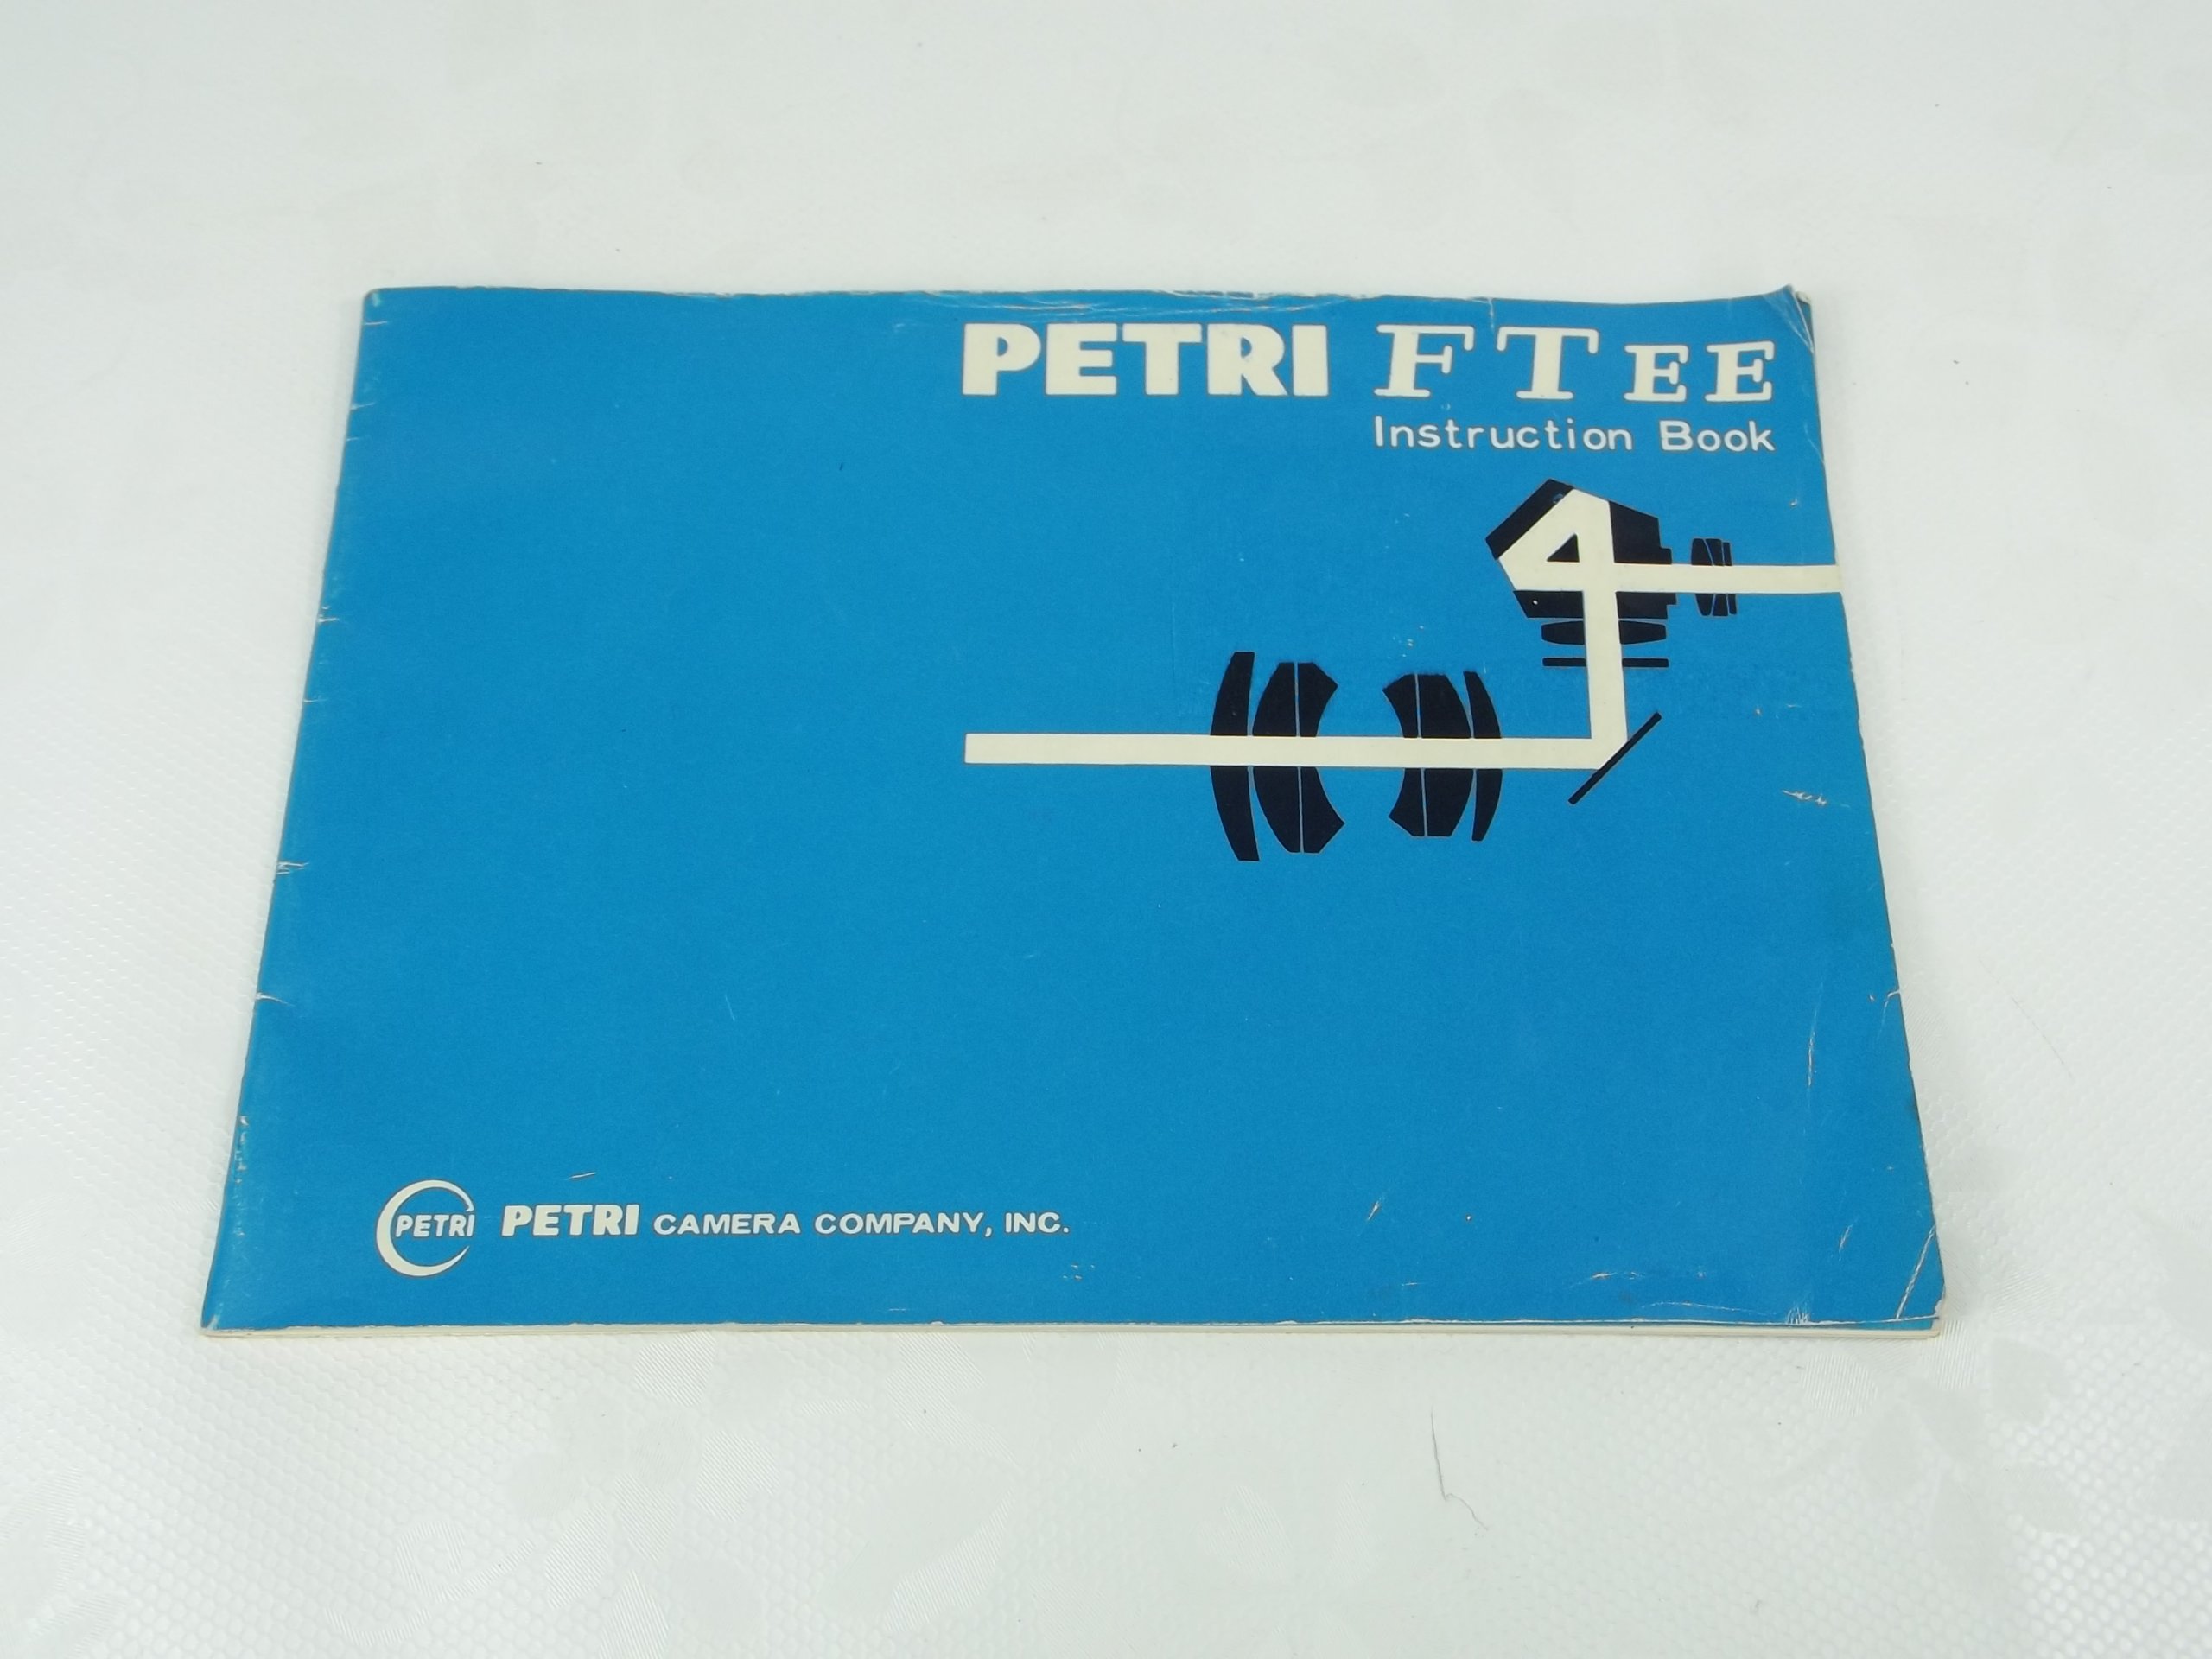 Petri ft ee-továrenské inštrukcie